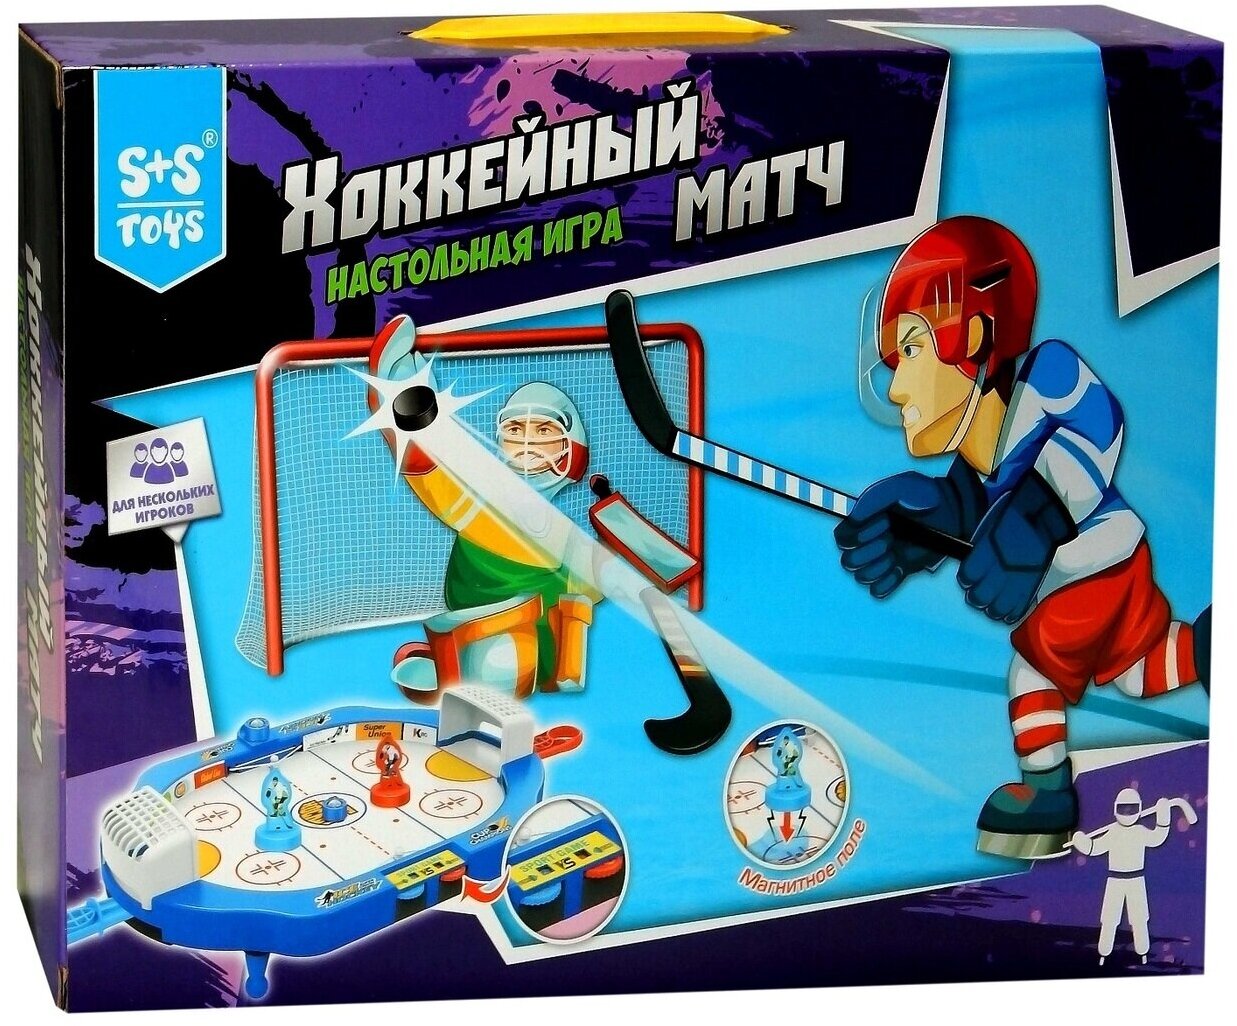 Настольная игра "Хоккейный матч"